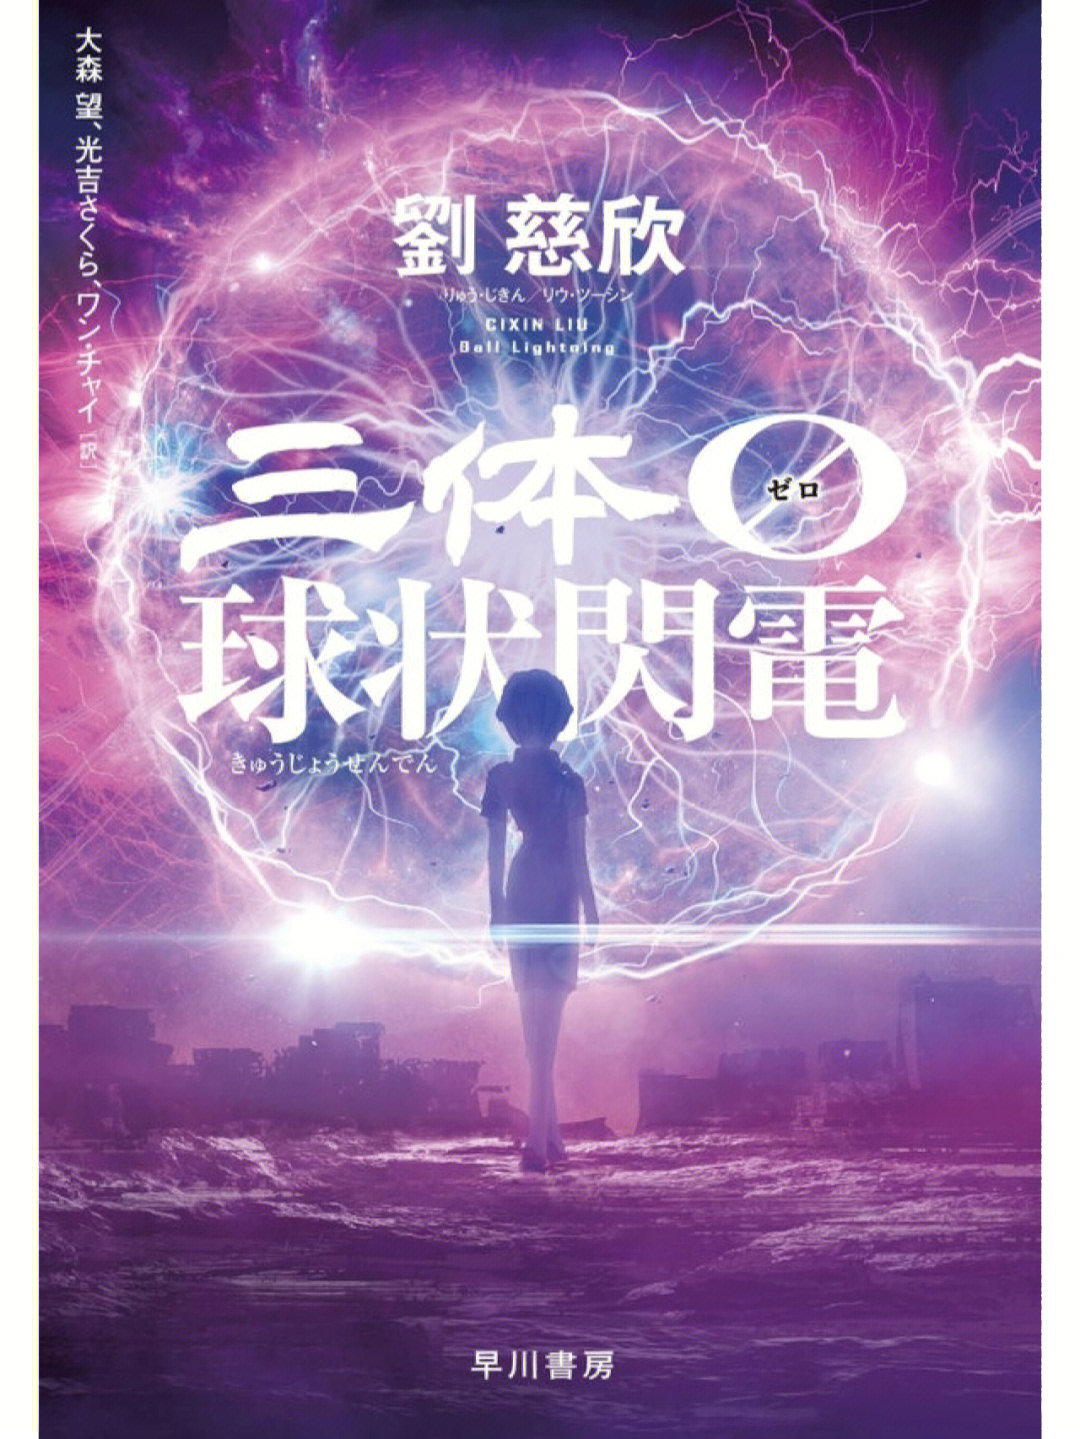 刘慈欣球状闪电日文版年底发售